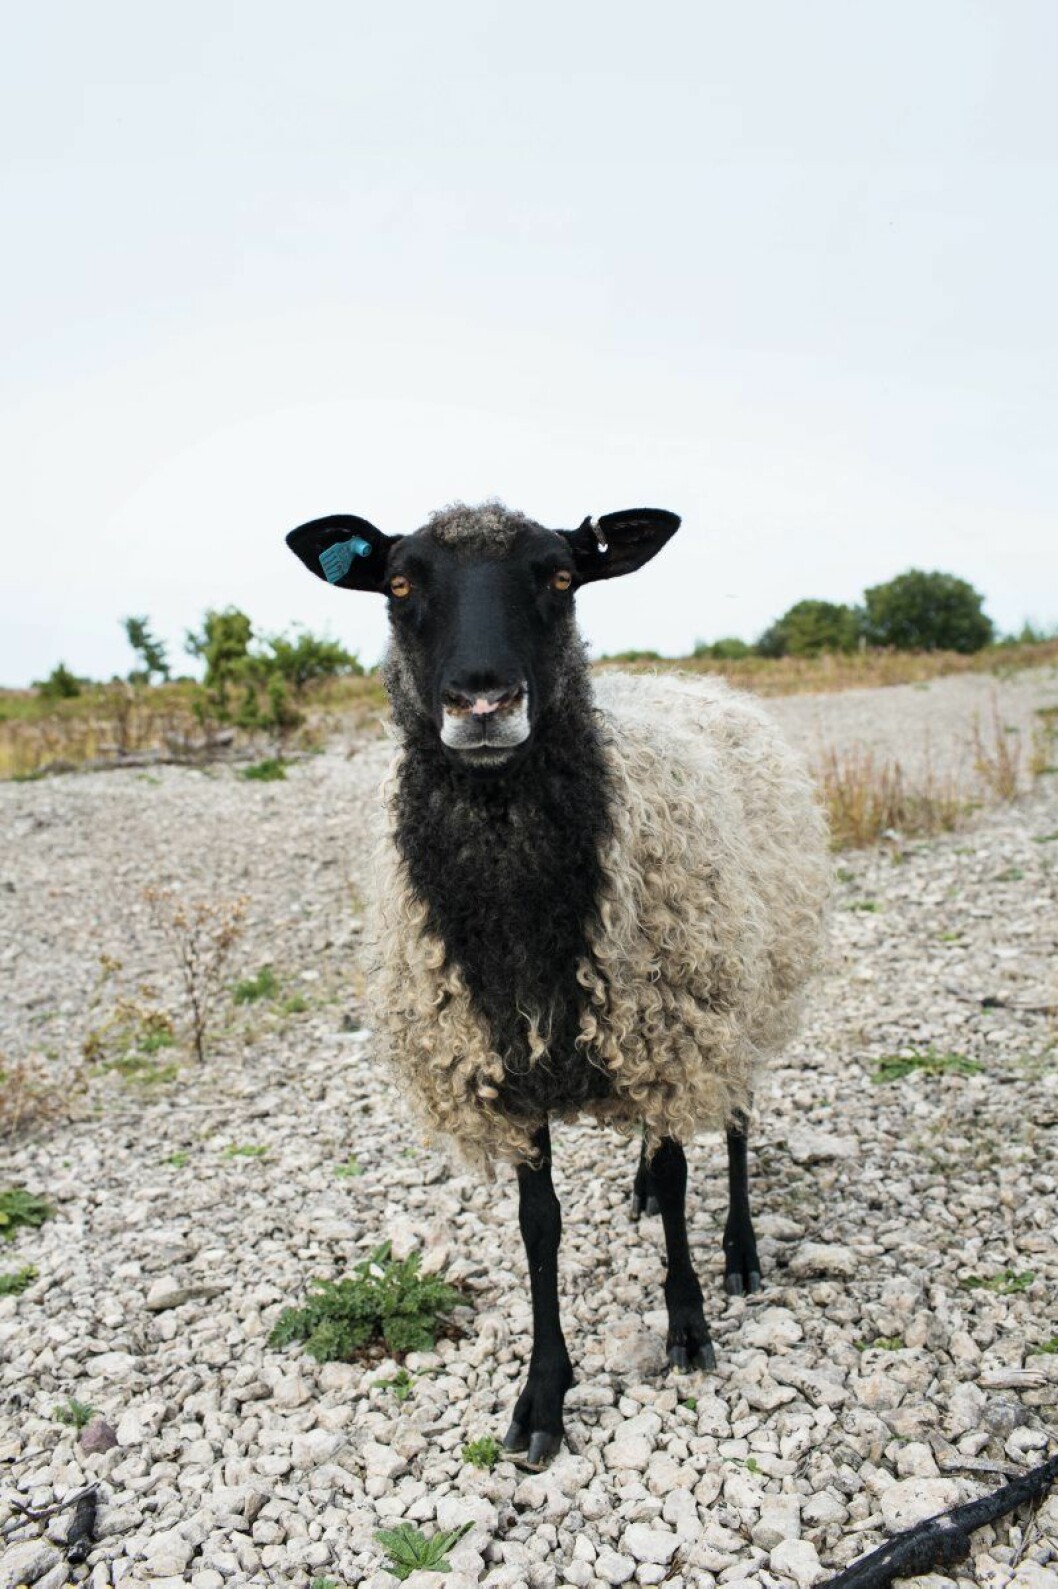 Lokal ull är inne, här en producent på Gotland. Foto: Johan Annerfelt